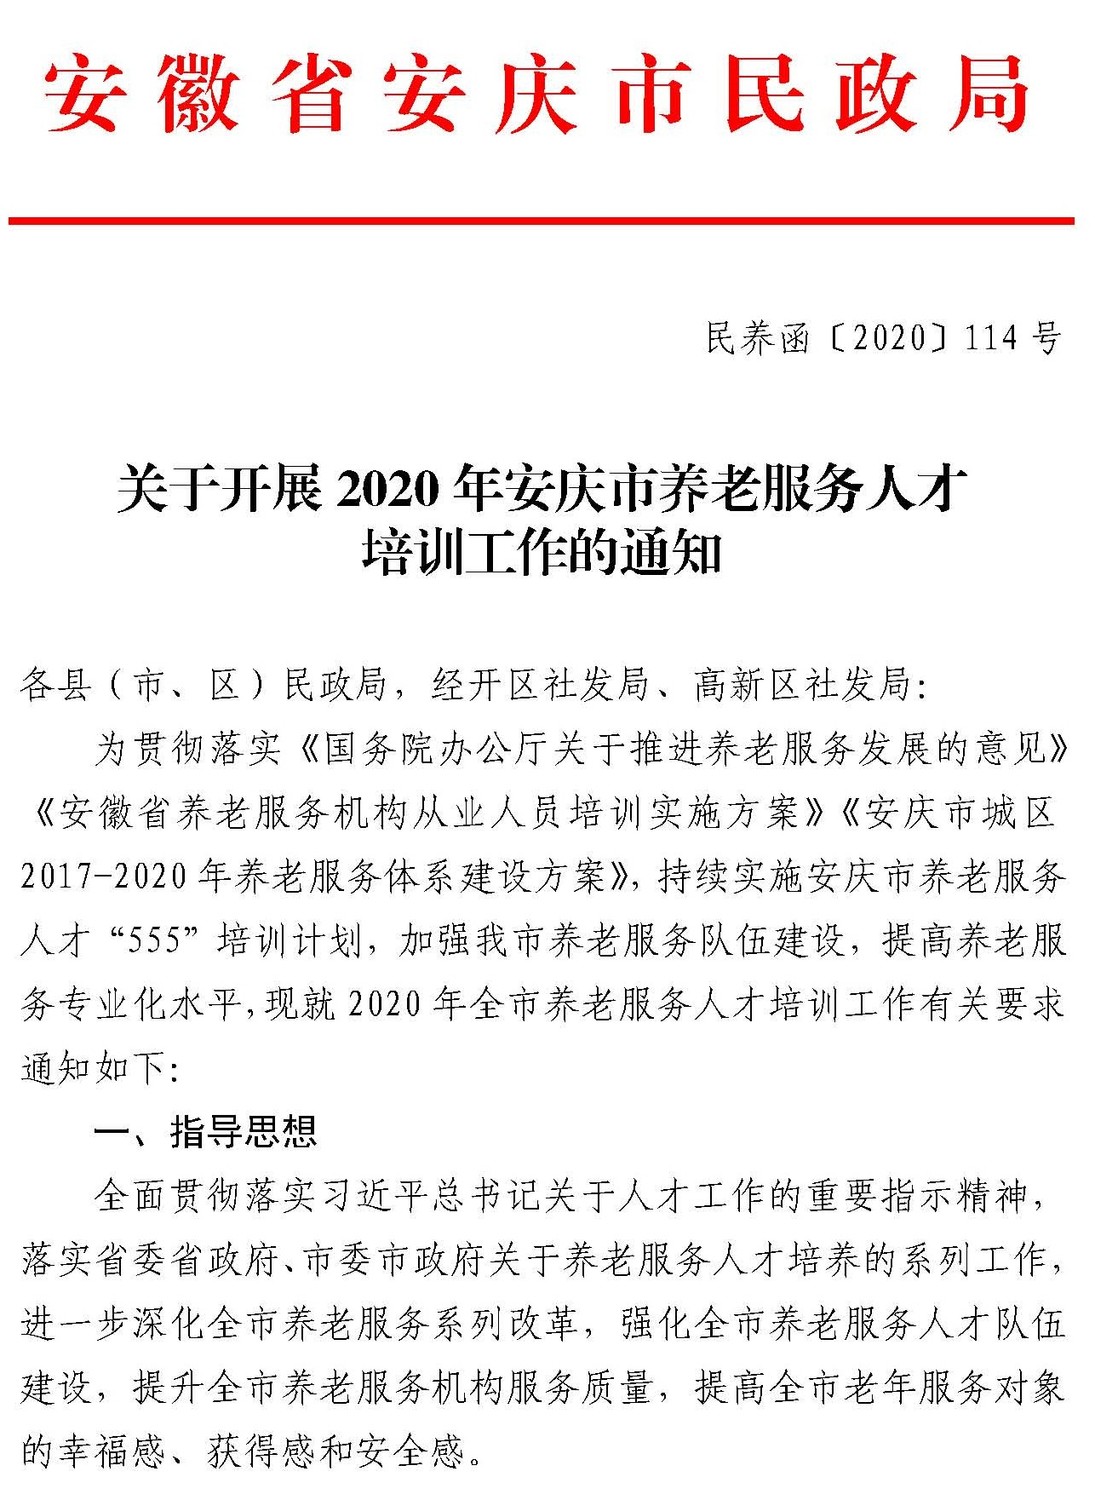 -10 关于开展2020年安庆市养老服务人才培训工作的通知-114_页面_1.jpg